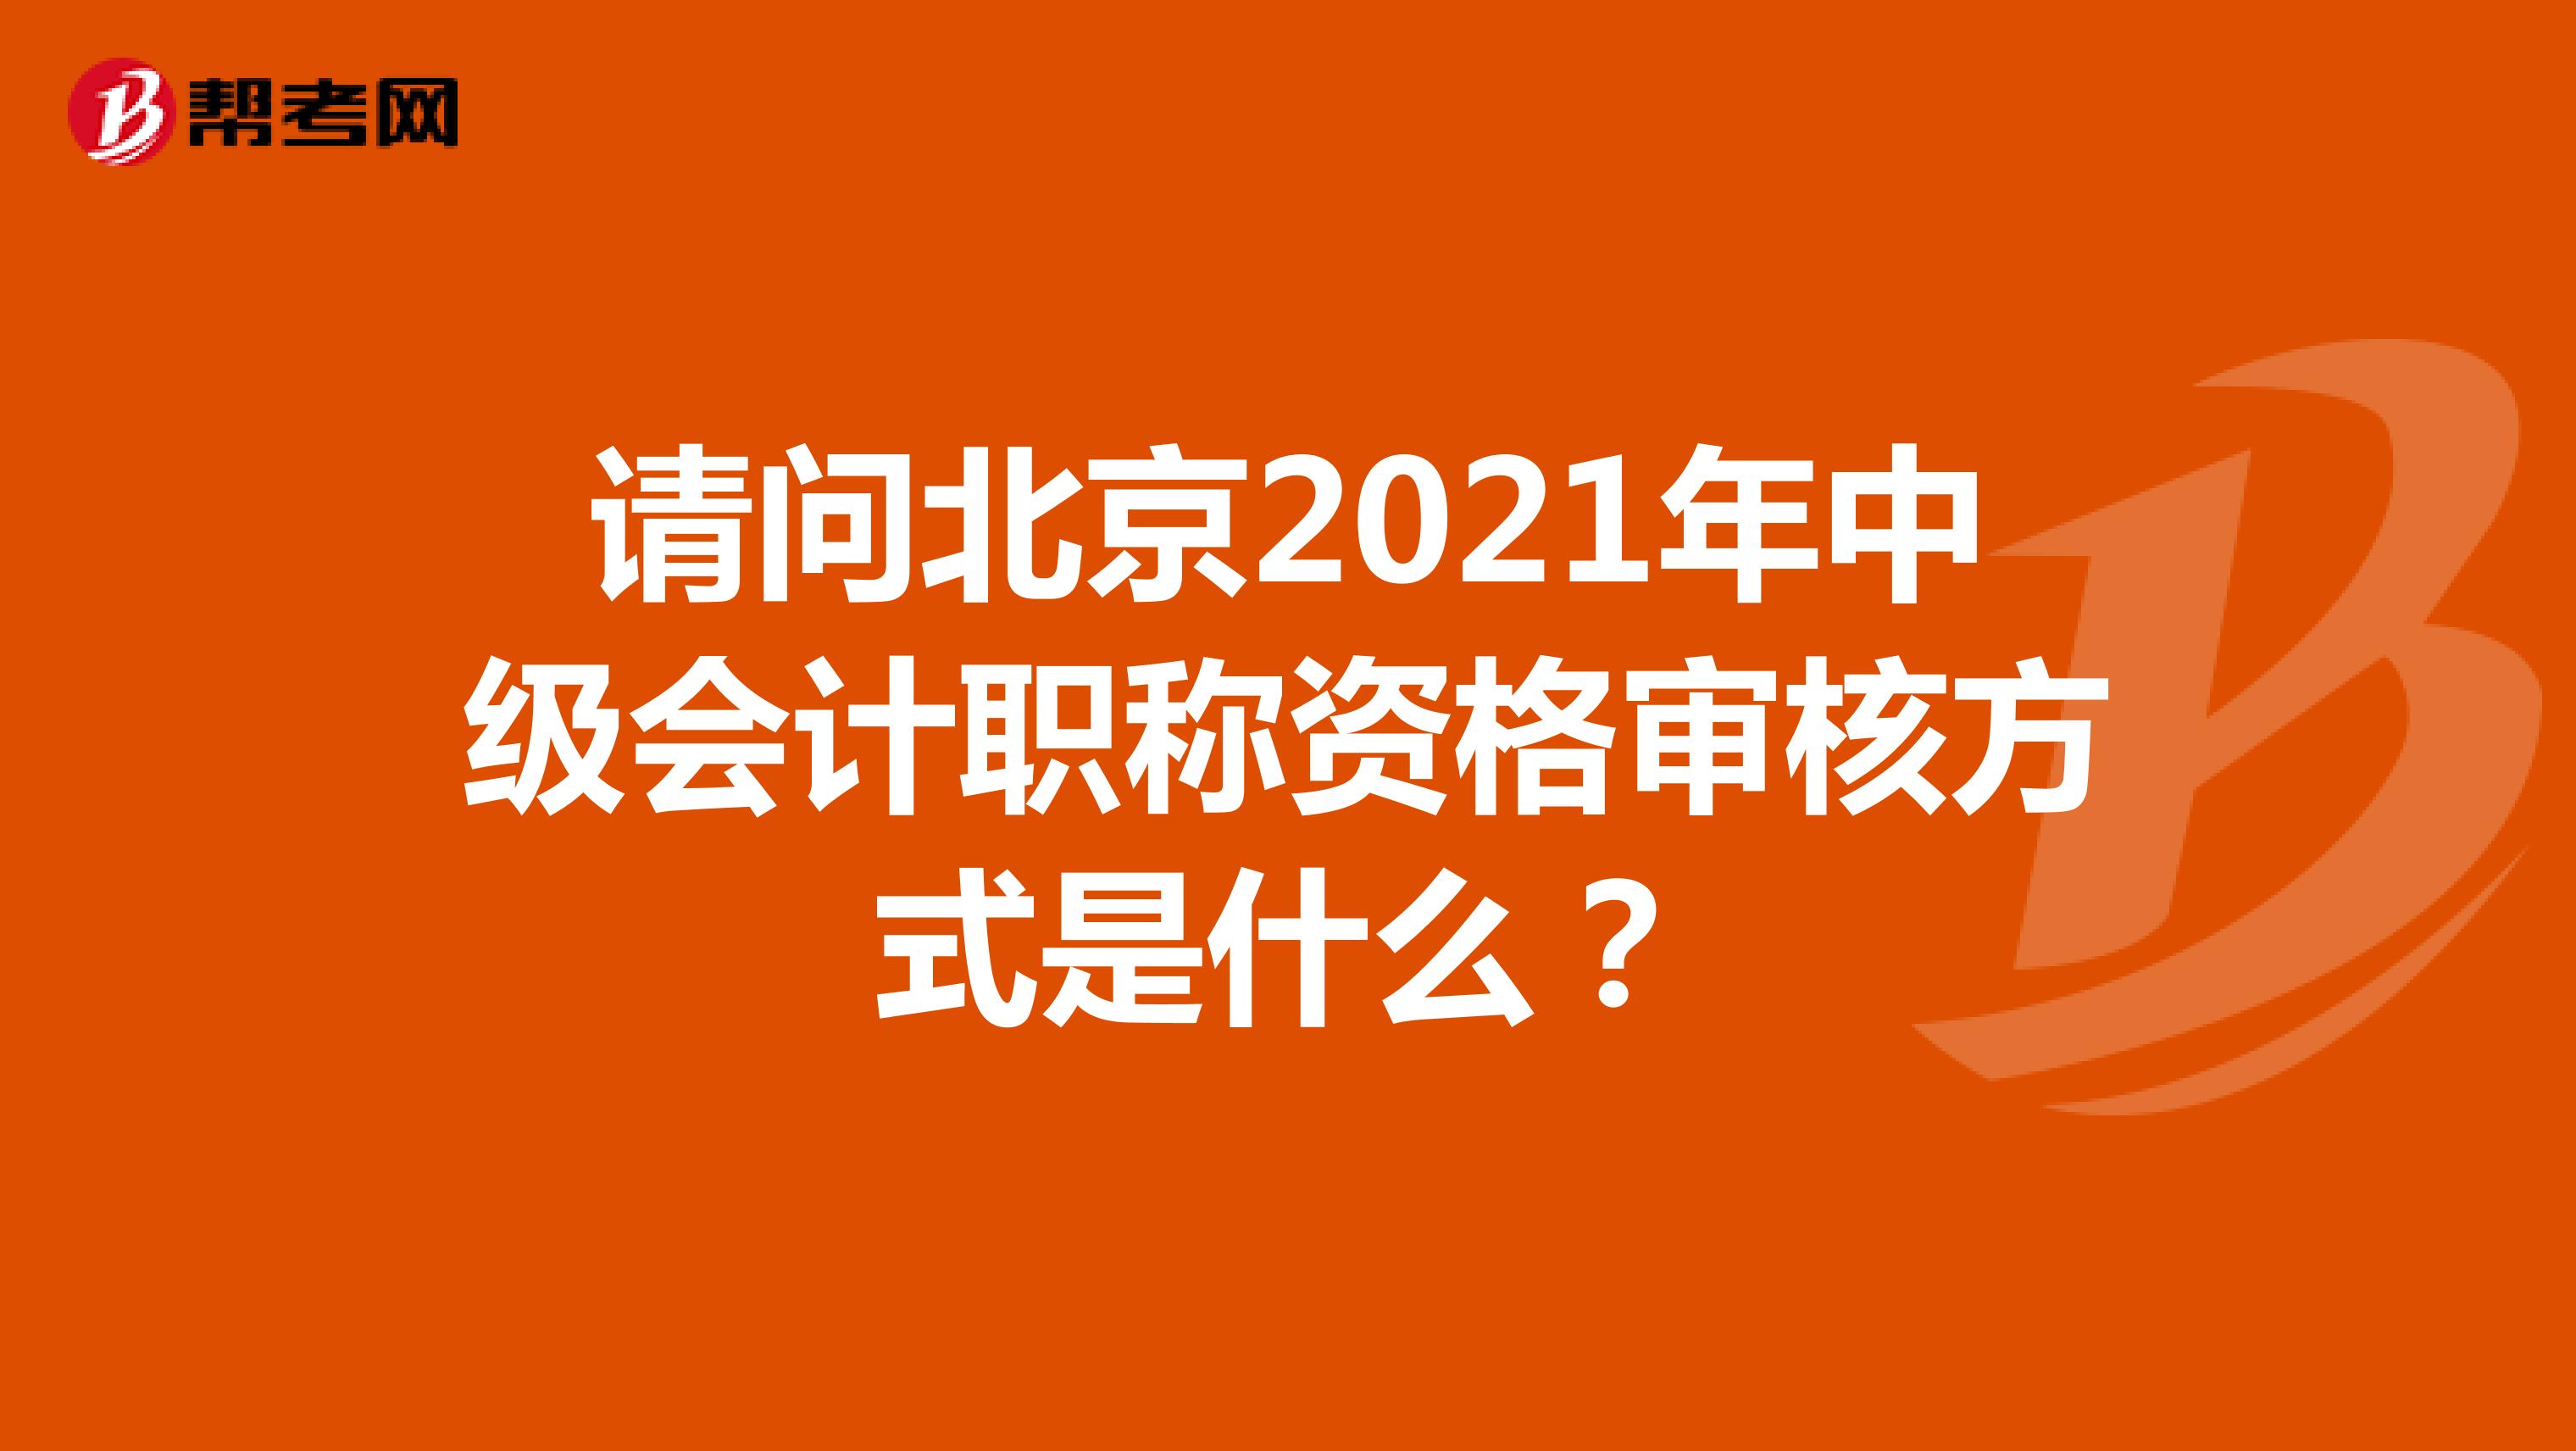 请问北京2021年中级会计职称资格审核方式是什么？